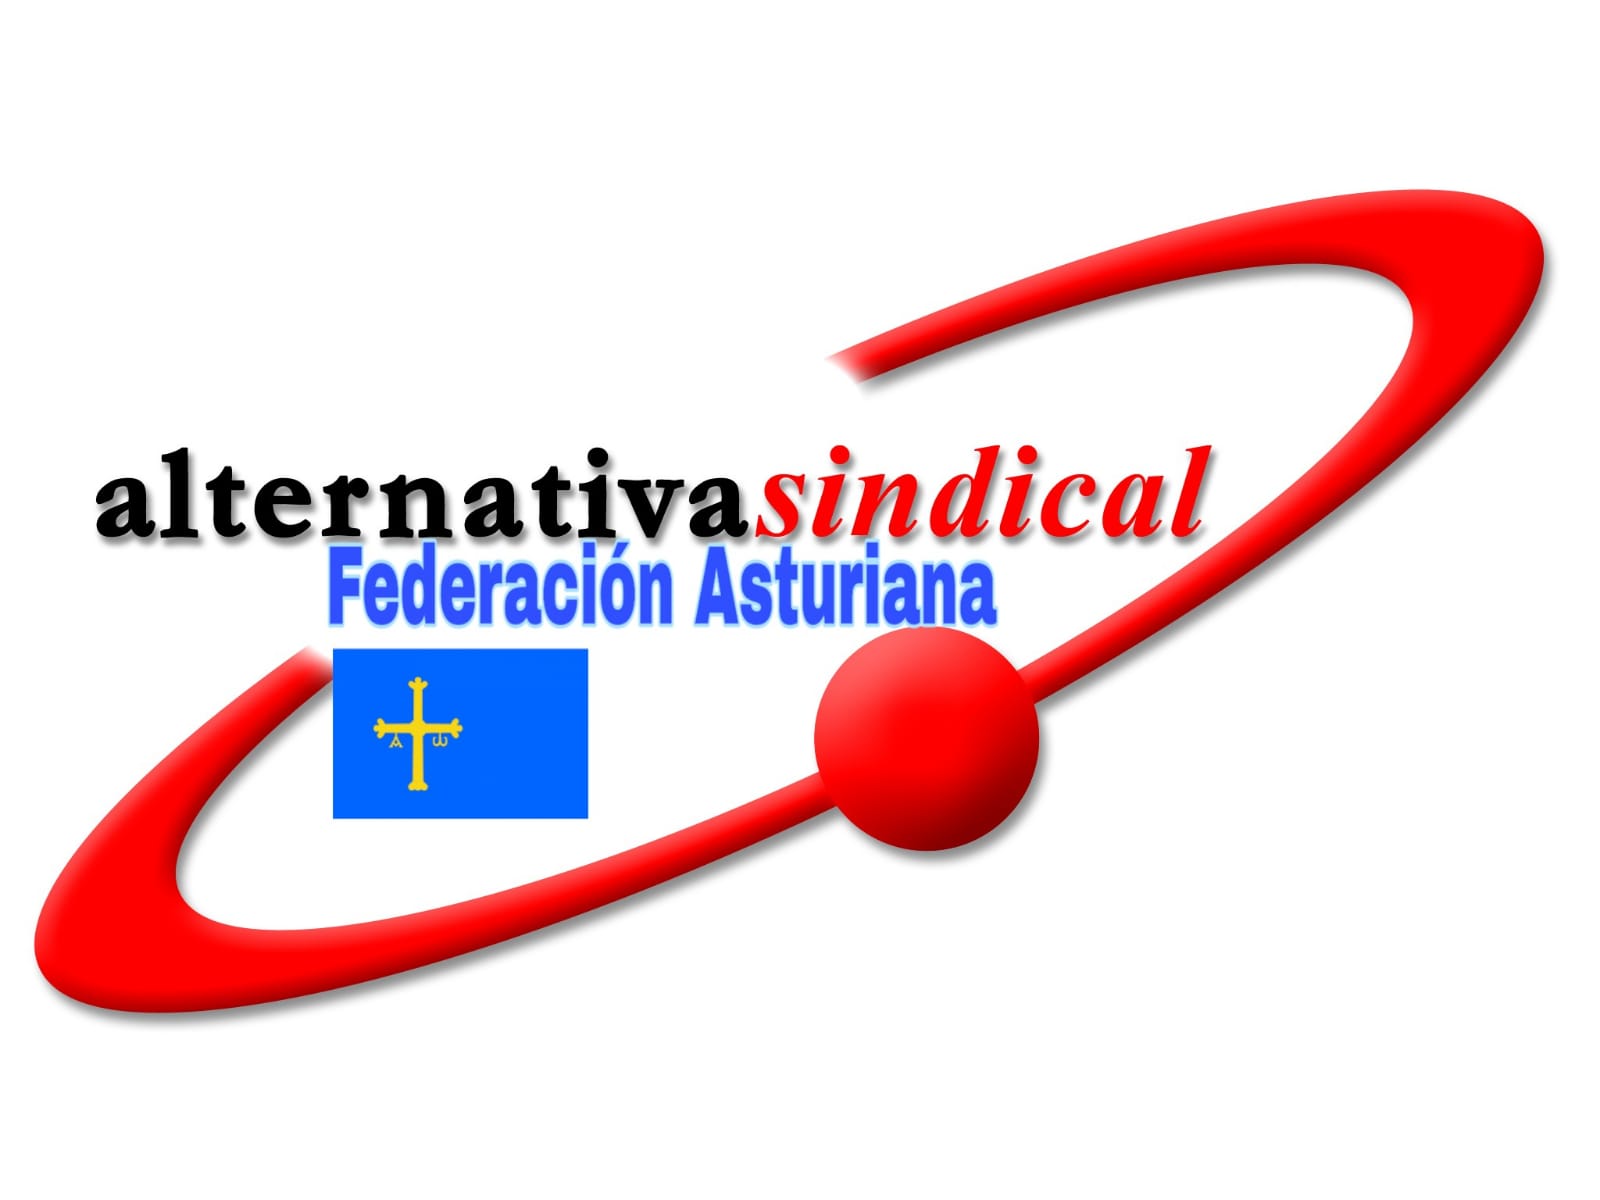 AlternativaSindical-Asturias